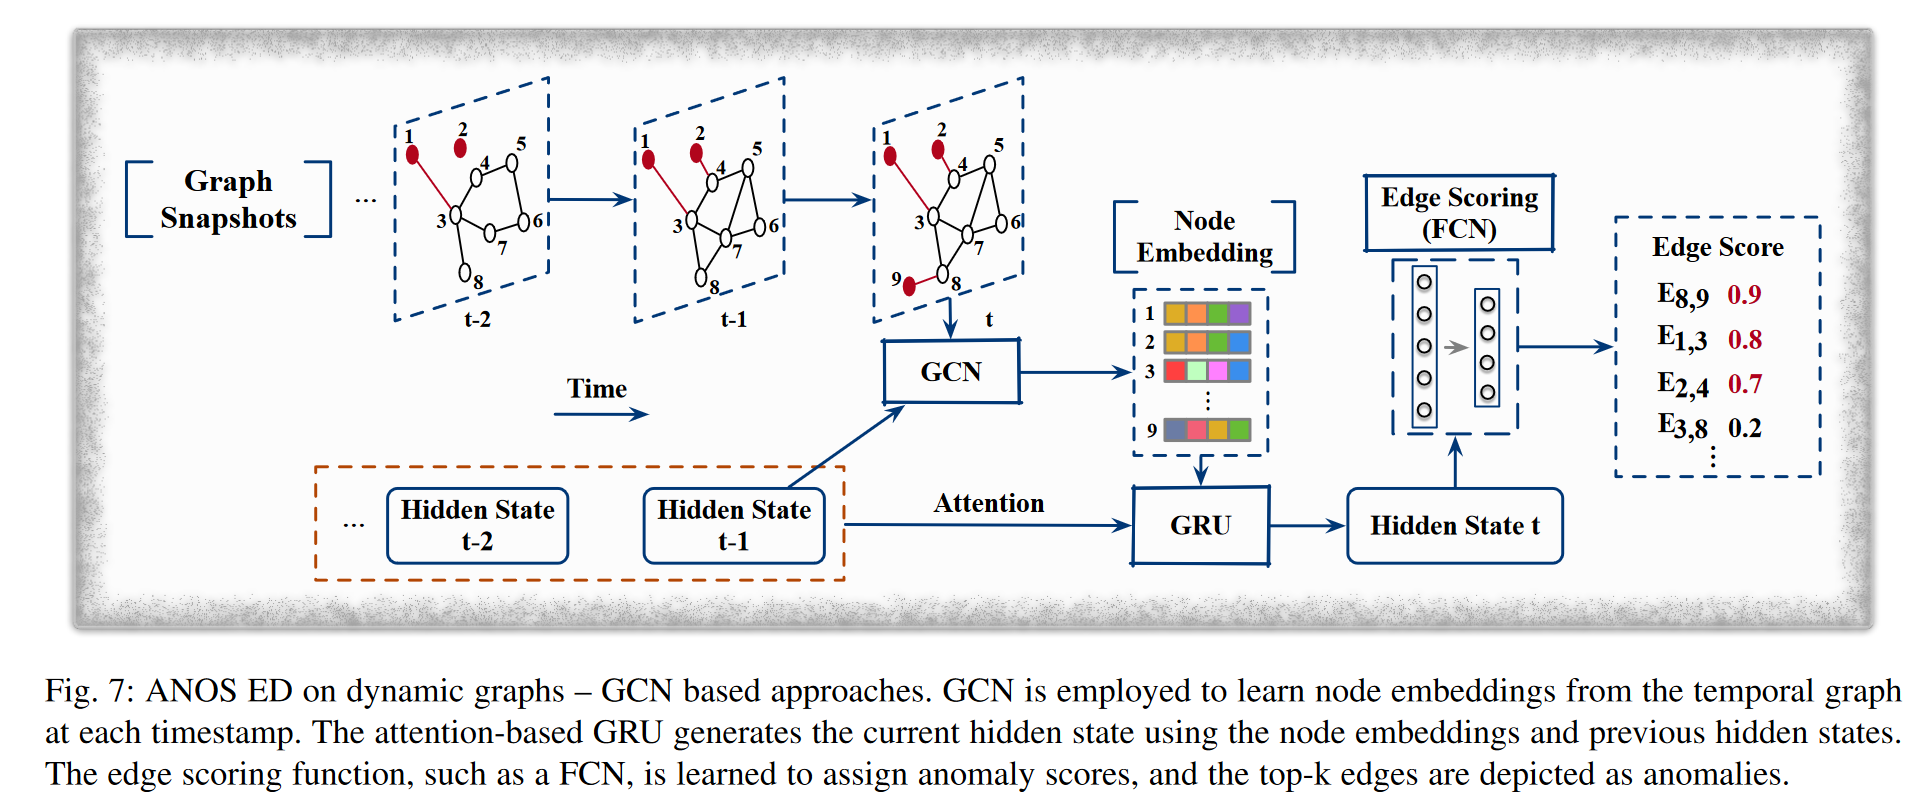 GCN 被用来从每个时间戳的时序图中学习节点嵌入，基于注意力的GRU使用节点嵌入和先前的隐藏状态生成当前的隐藏状态。边缘评分函数，例如 FCN，被学习用来分配异常分数，并且前 k 个边缘被描述为异常。